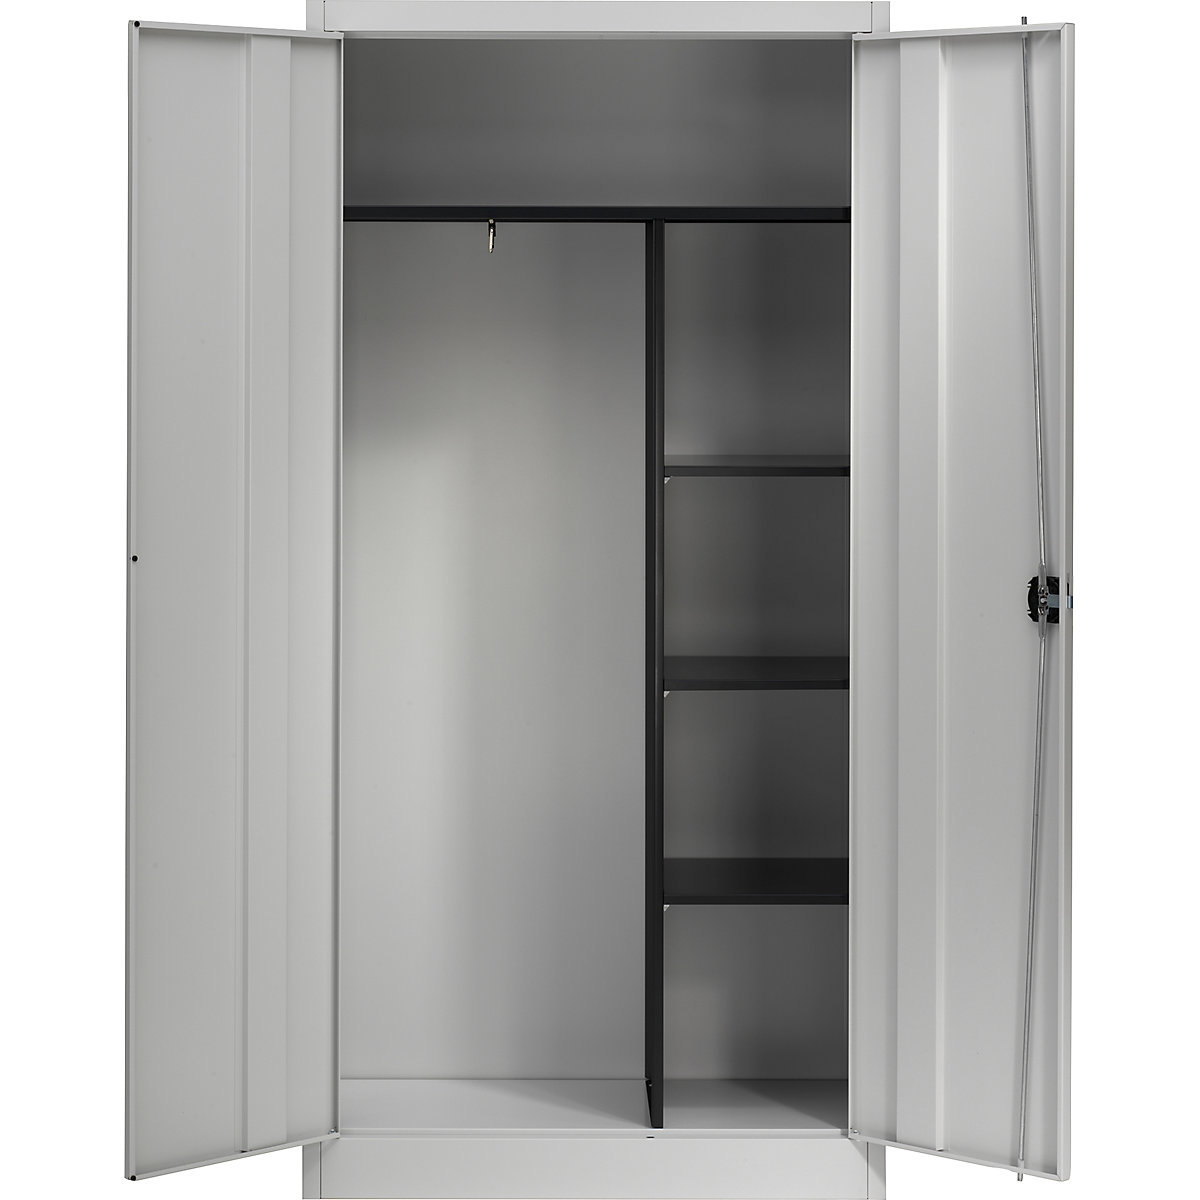 Ocelová skříň s otočnými dveřmi – mauser, 3 krátké police a věšák, světle šedá-4